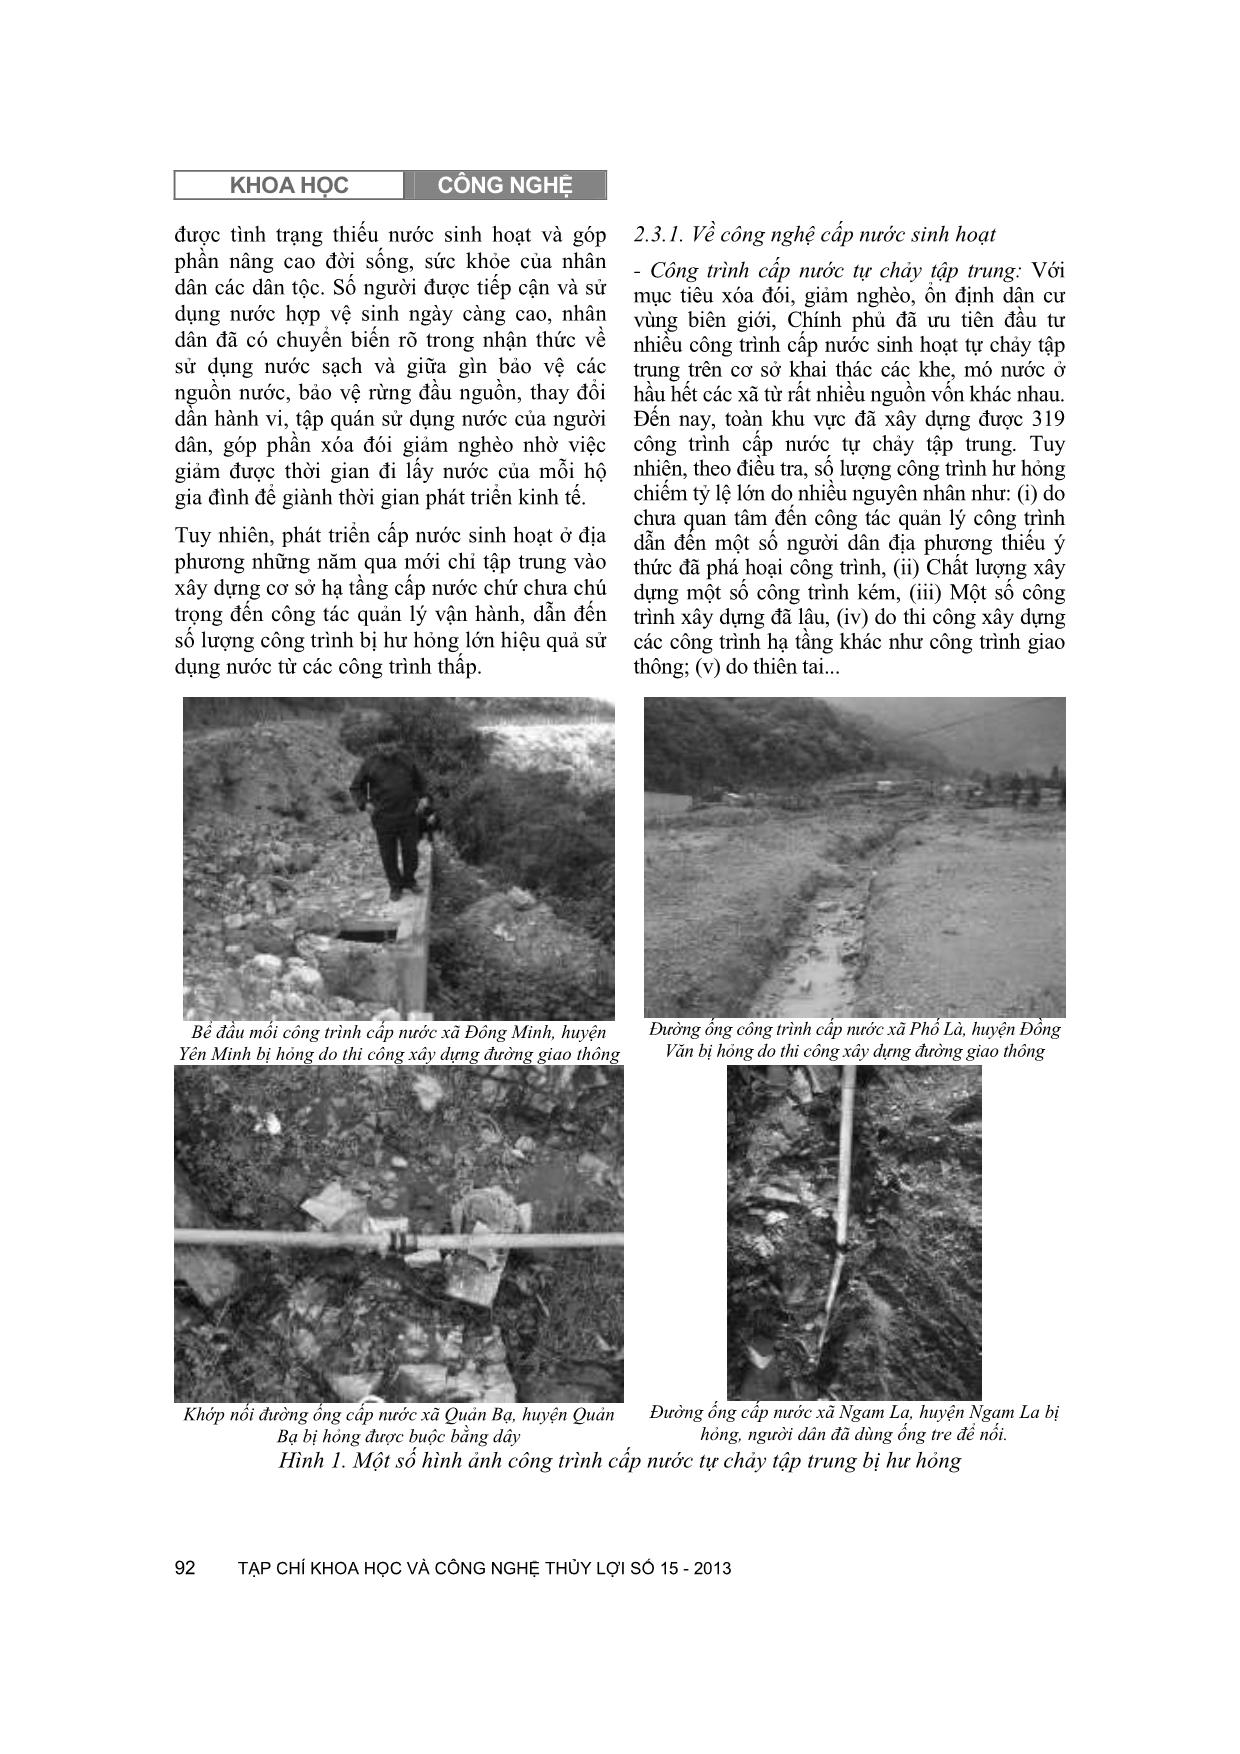 Cấp nước sinh hoạt vùng cao núi đá Hà Giang: Thực trạng và một số điều cần quan tâm giải quyết trang 3